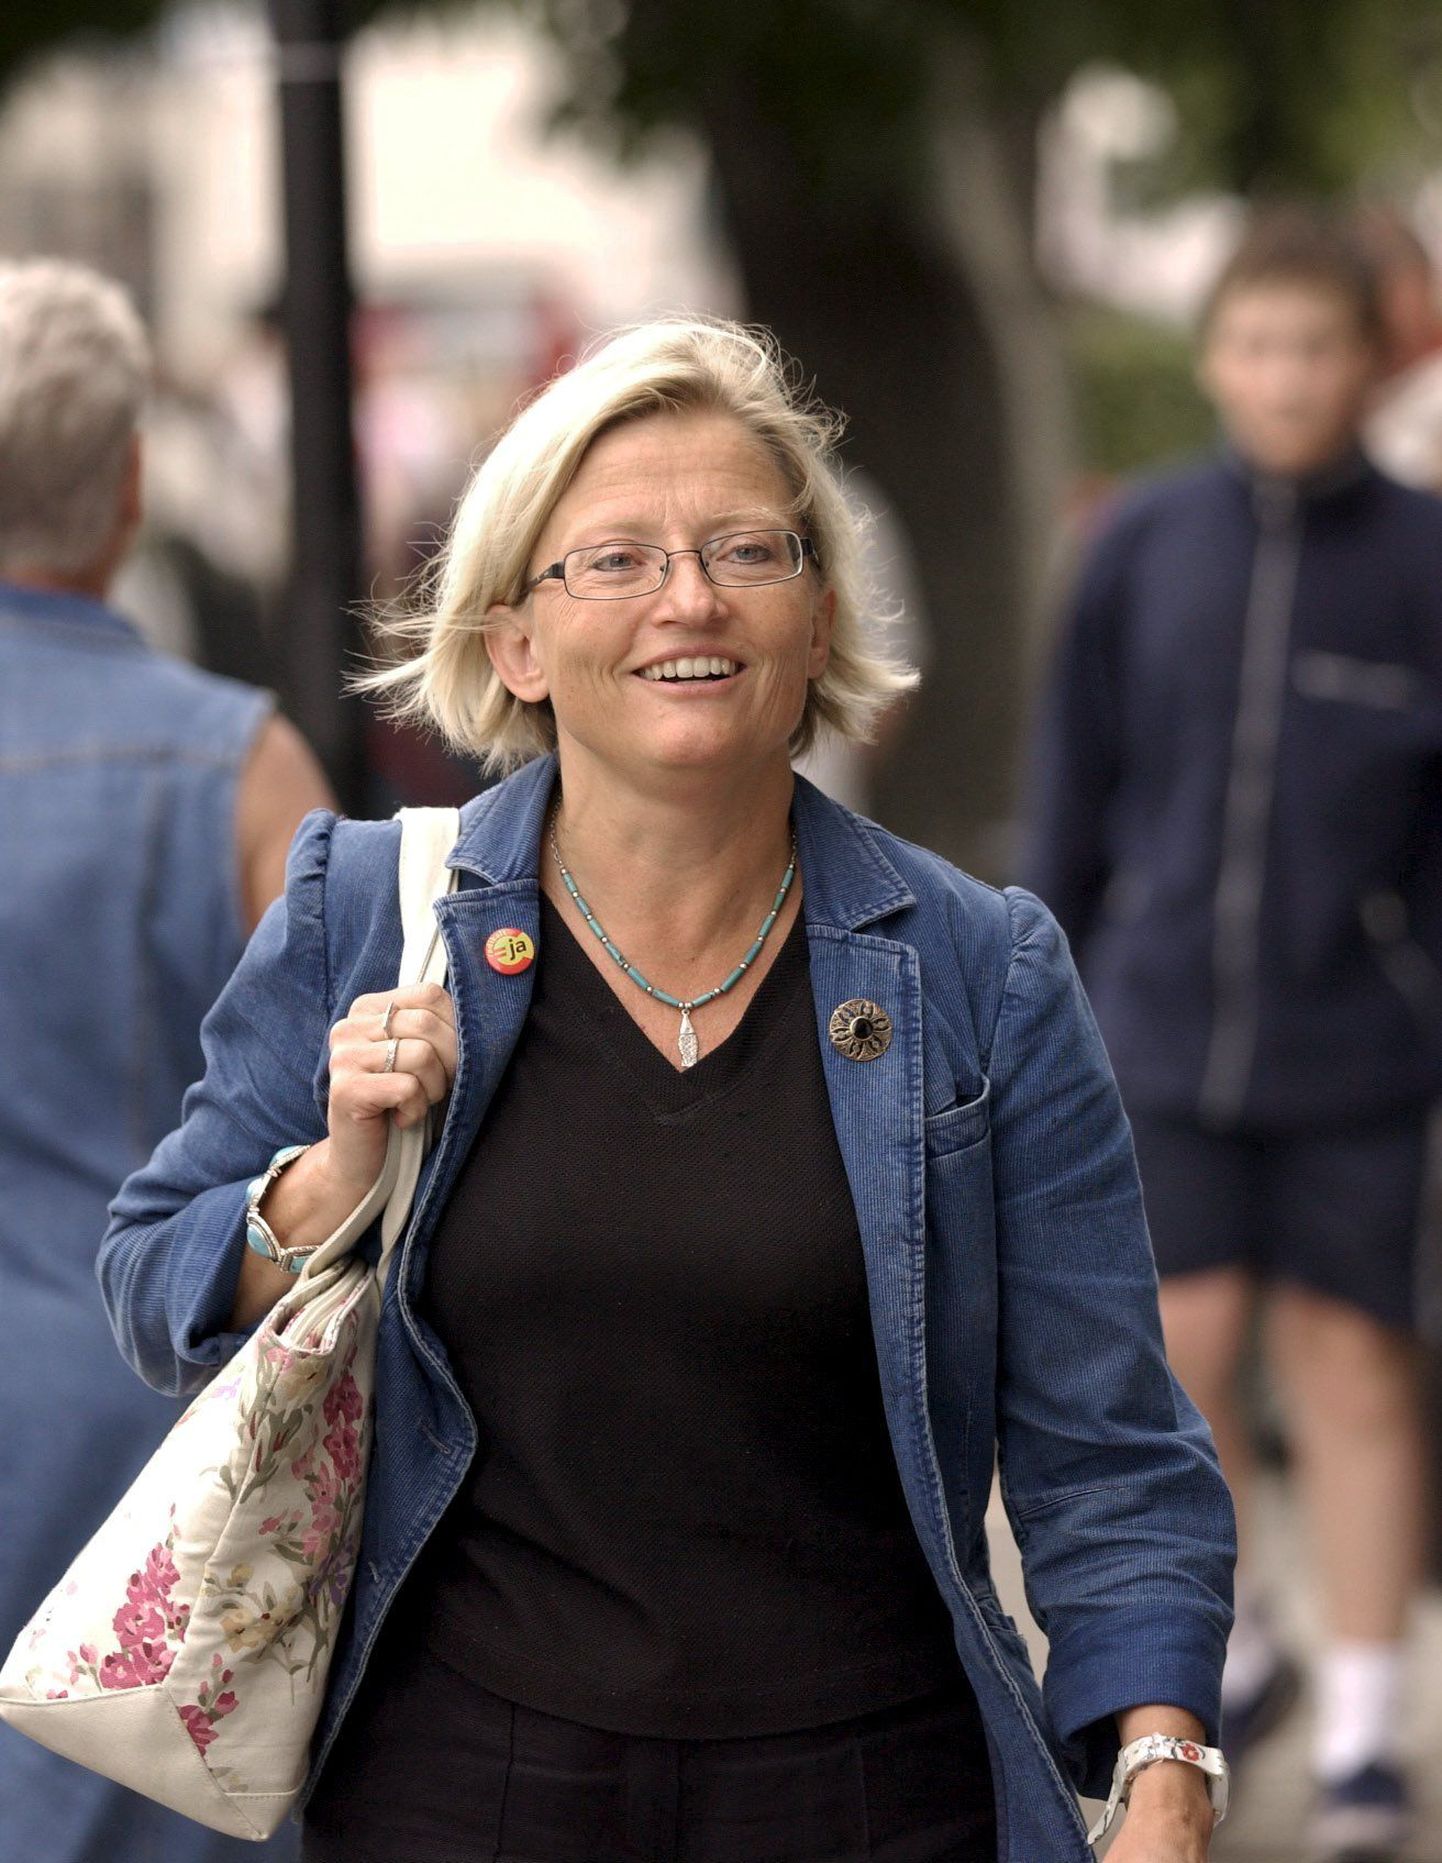 Rootsi endine välisminister Anna Lindh aastal 2003 tehtud fotol.